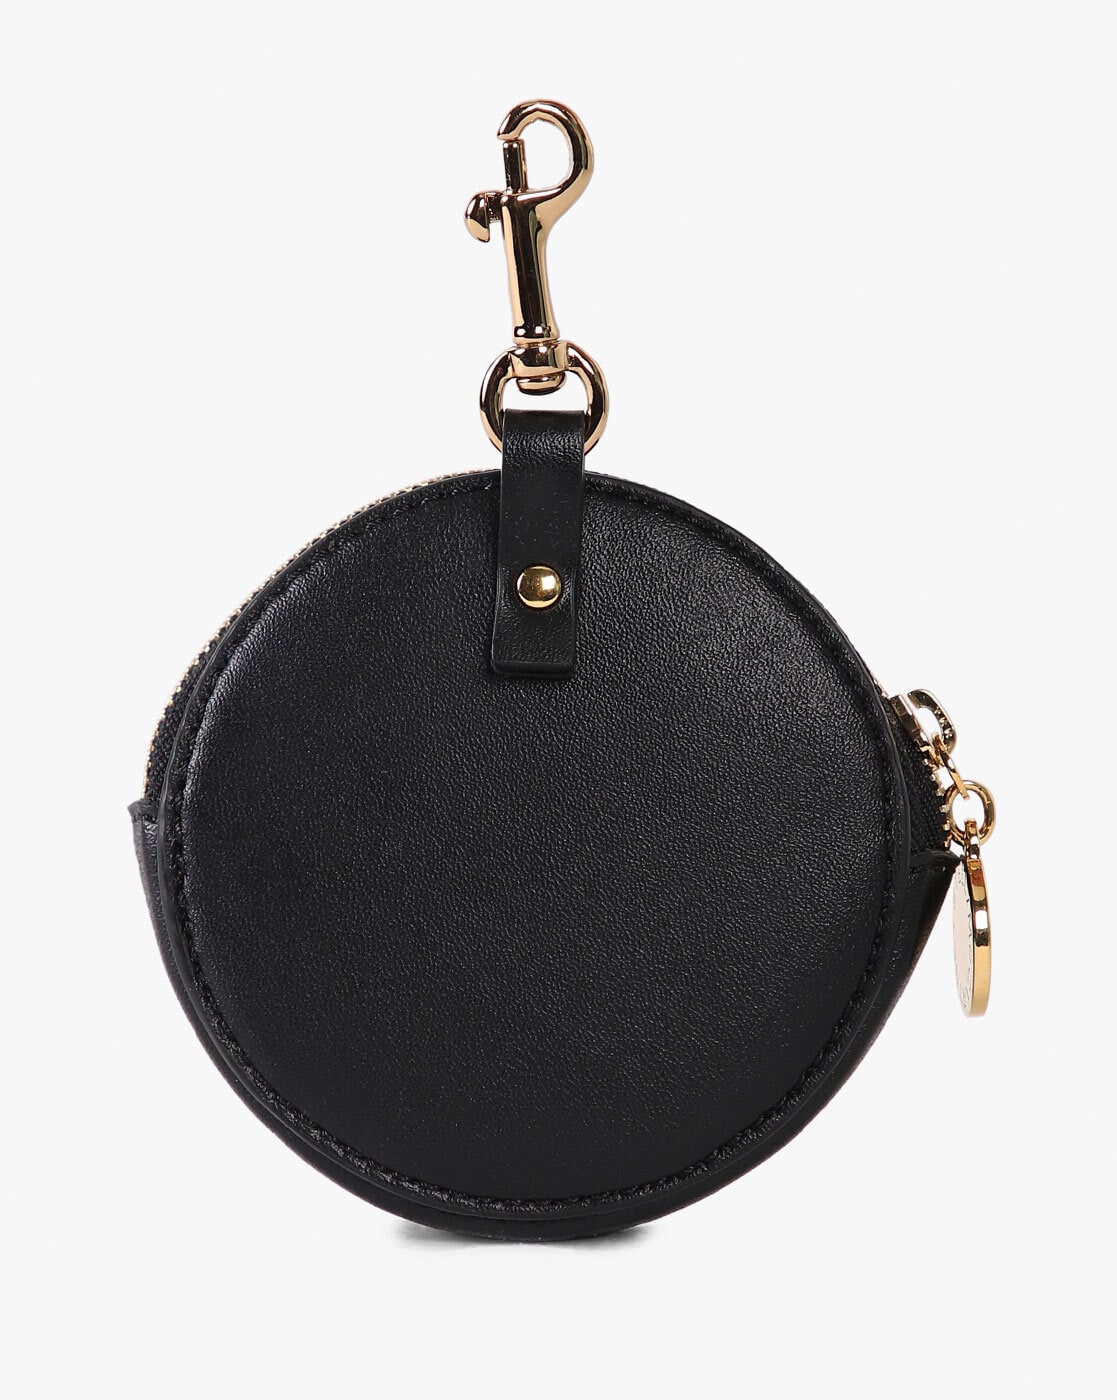 Key Fob - Cocker Spaniel - Black - The Handbag Store